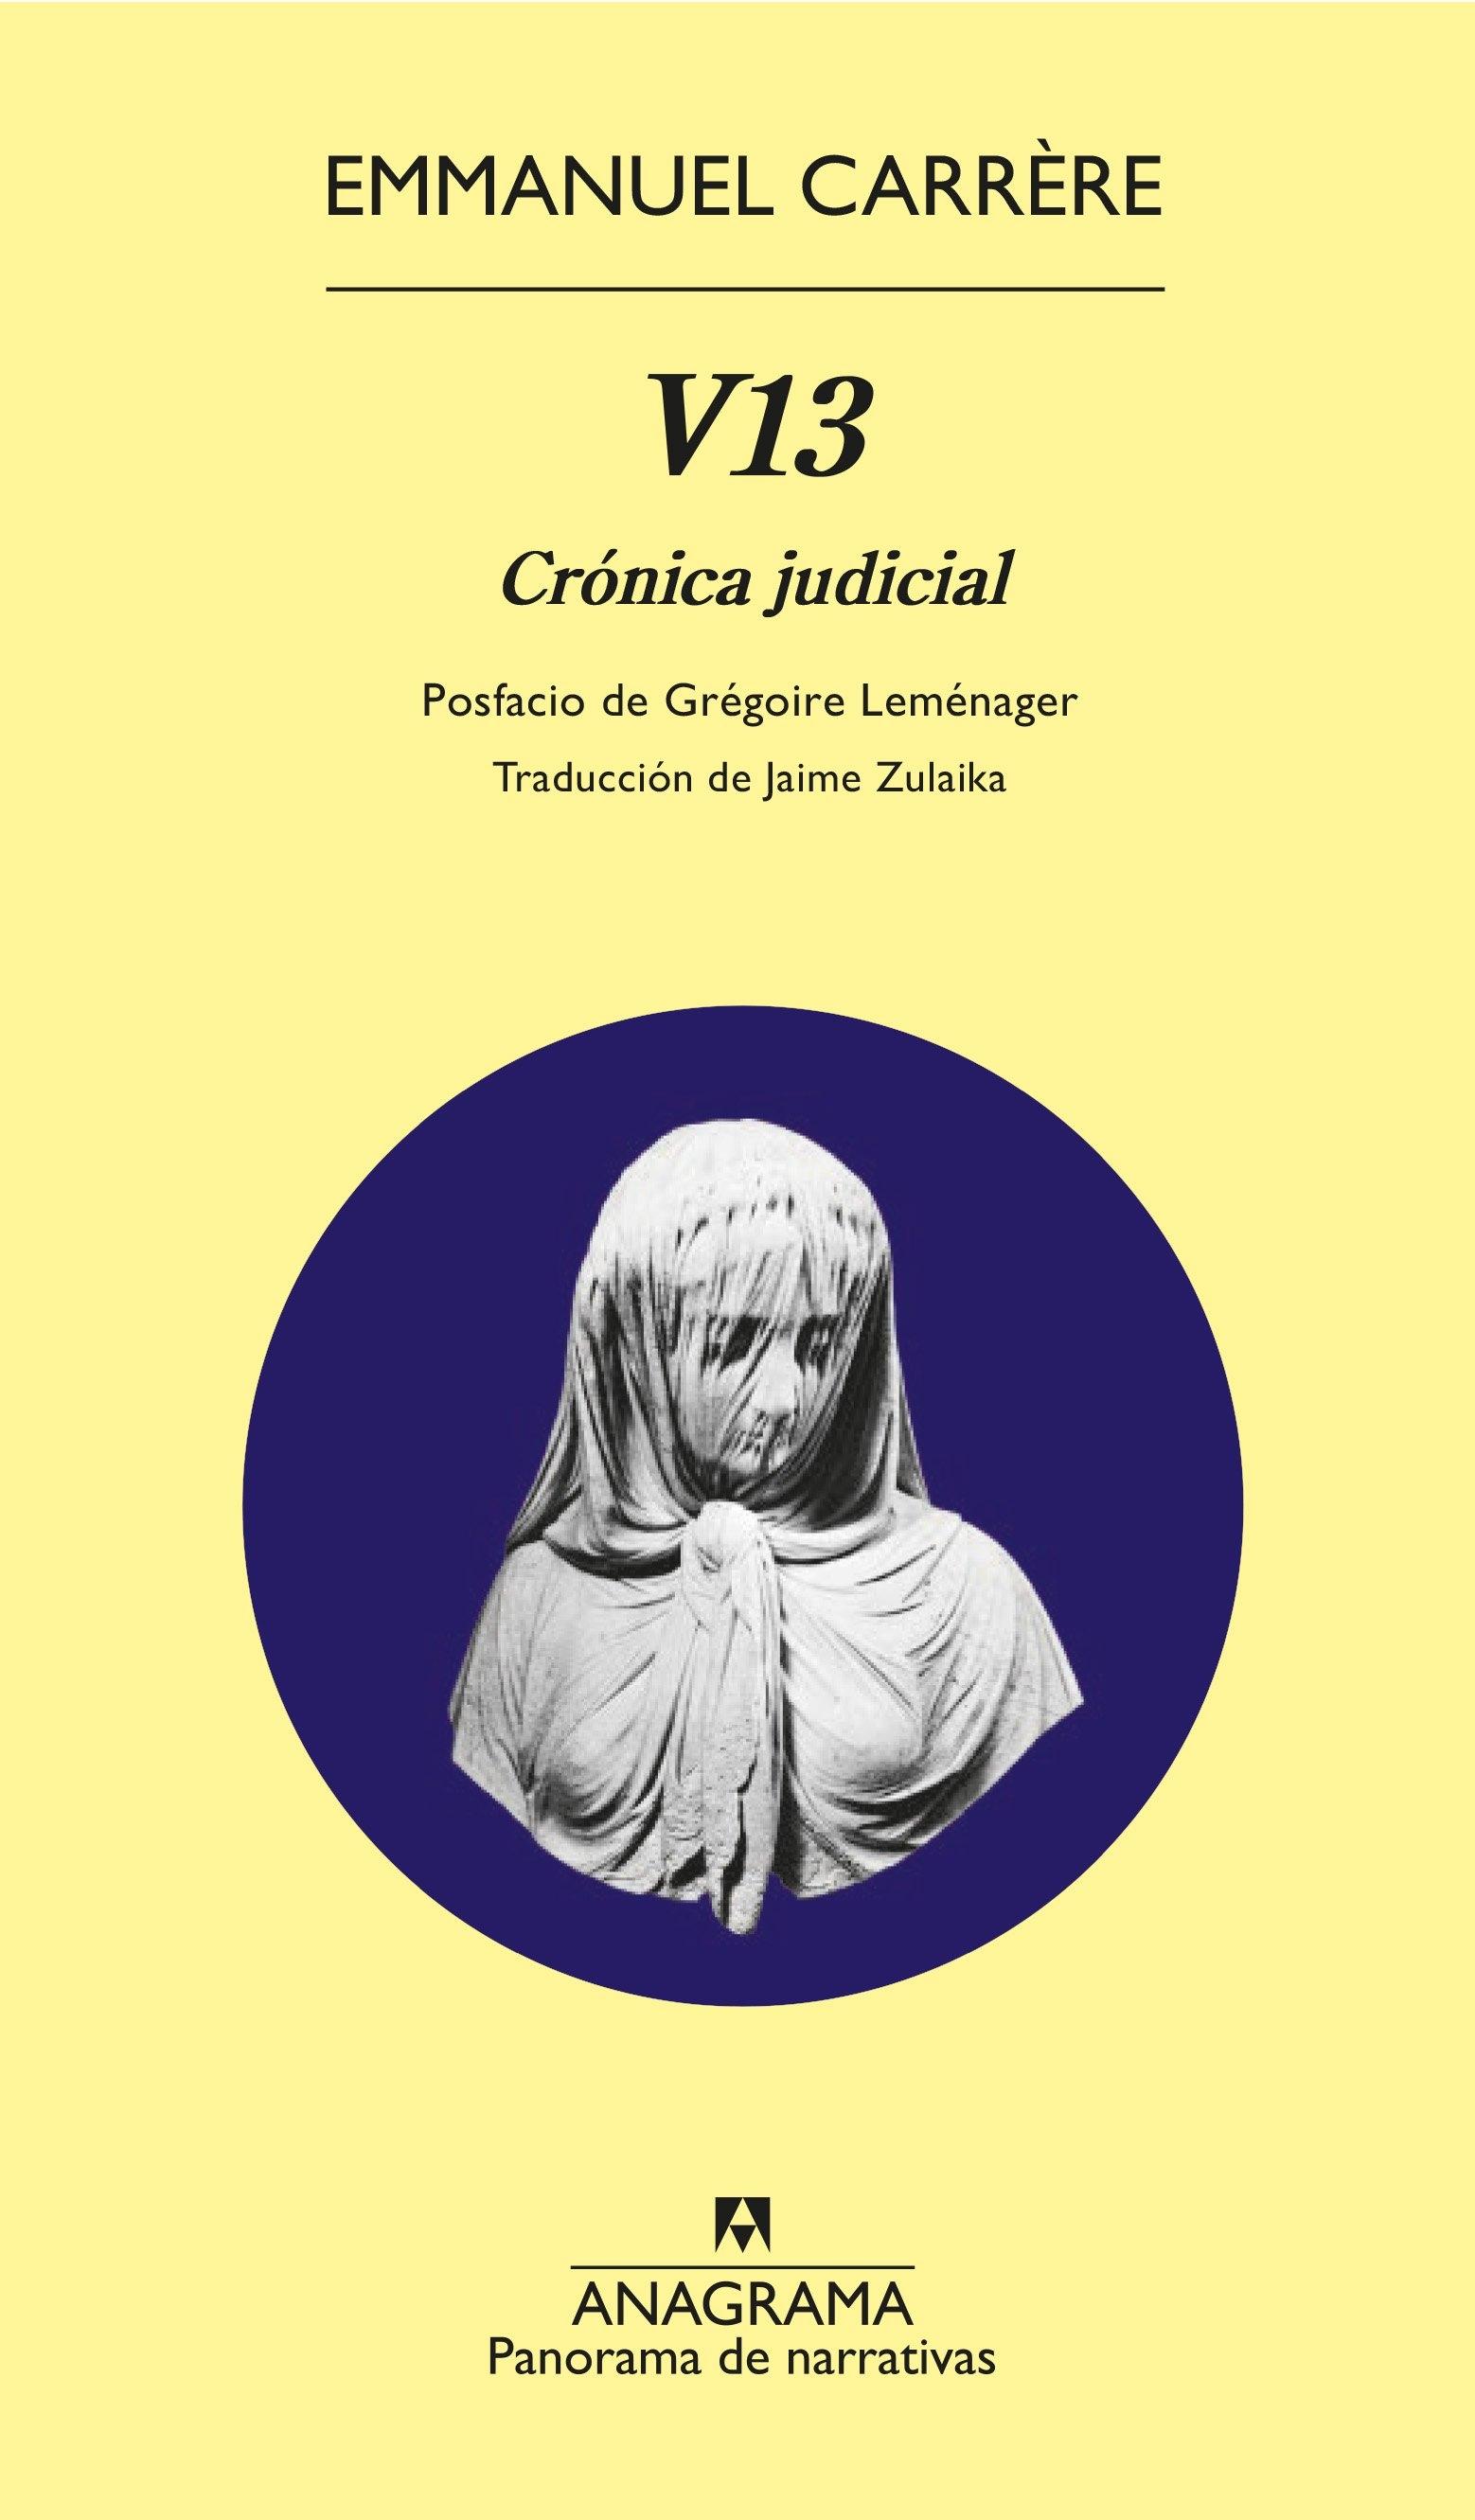 V13 "CRONICA JUDICIAL"